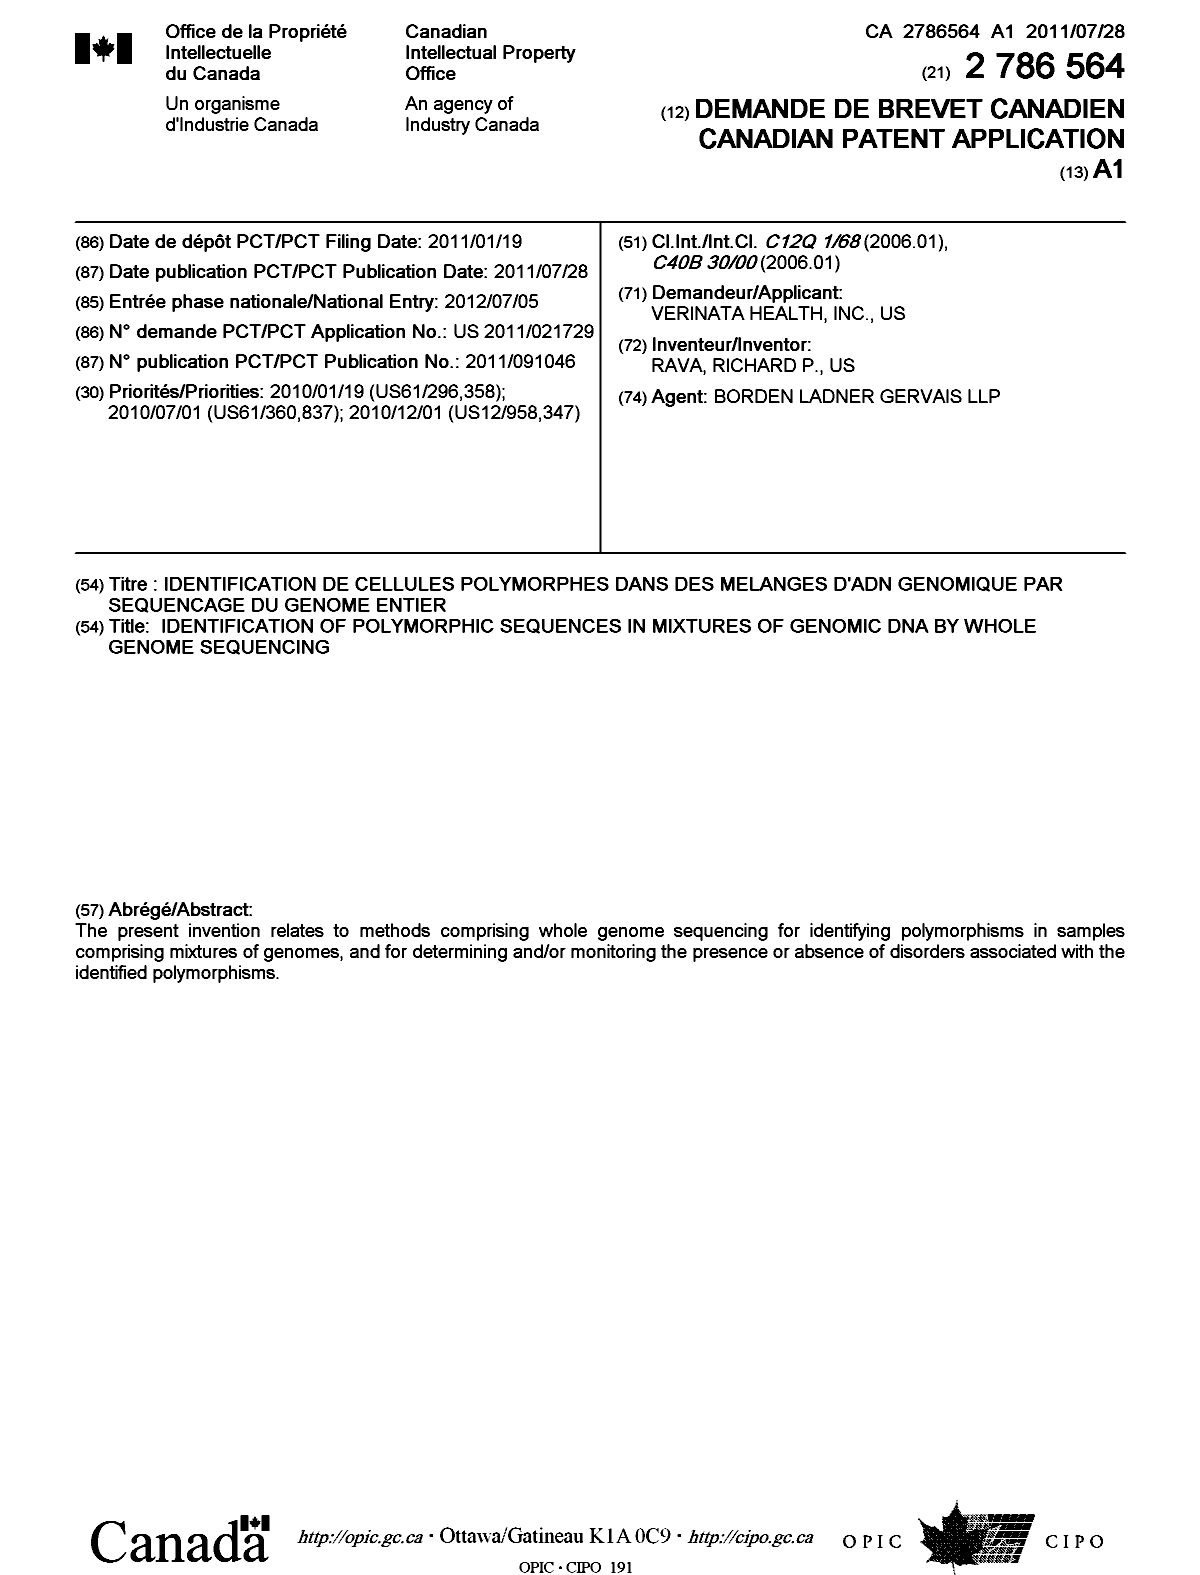 Document de brevet canadien 2786564. Page couverture 20120927. Image 1 de 1